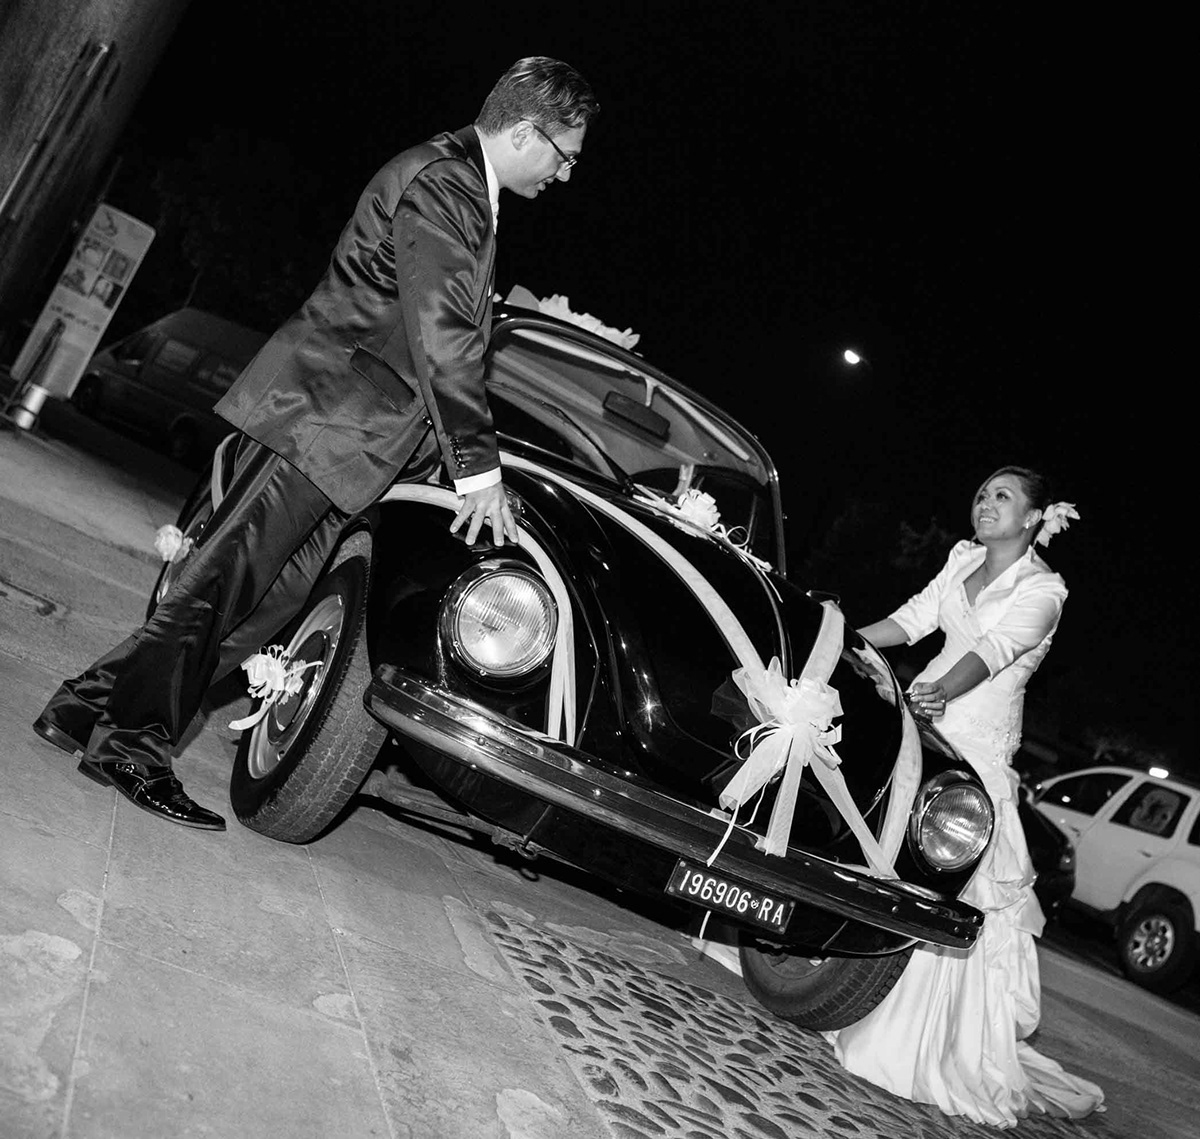 wedding matrimonio matrimoni mariage reportage fotografi fotografo photographer photographers ravenna bologna ferrara Italy